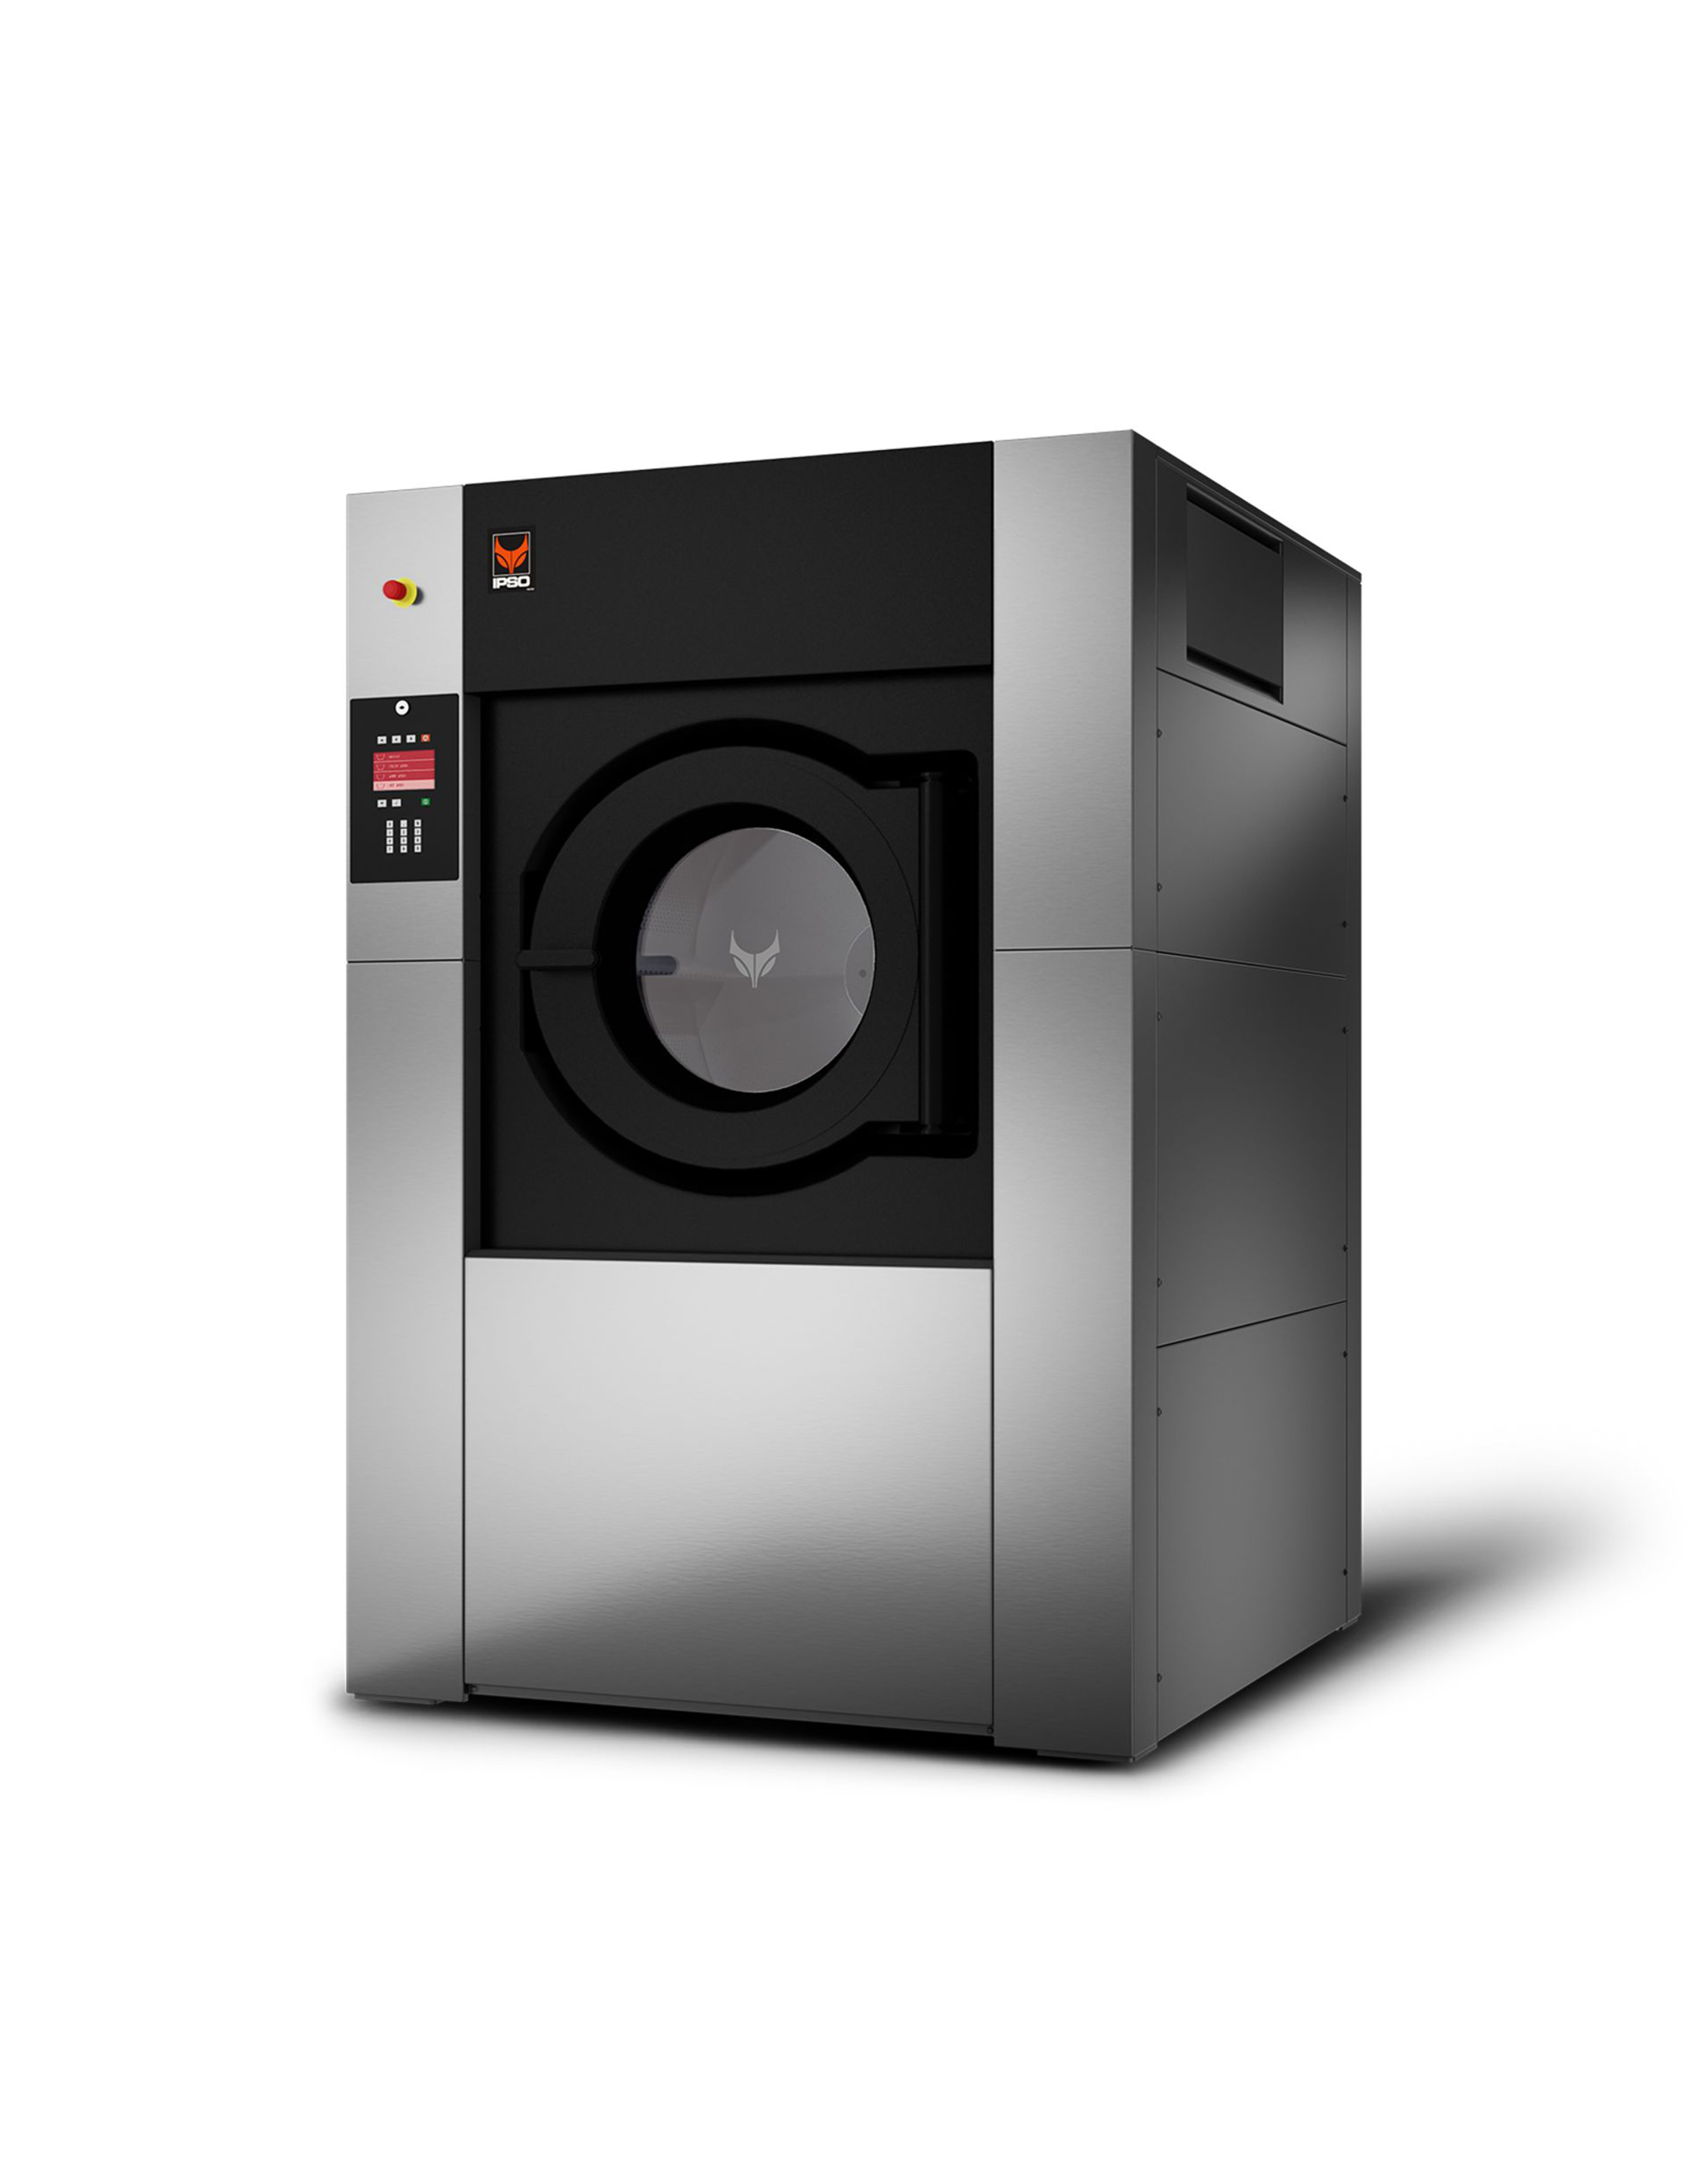 IY350-rechts-industriele-wasmachine-machine-à-laver-industriel-350-kilo-kg-industrial